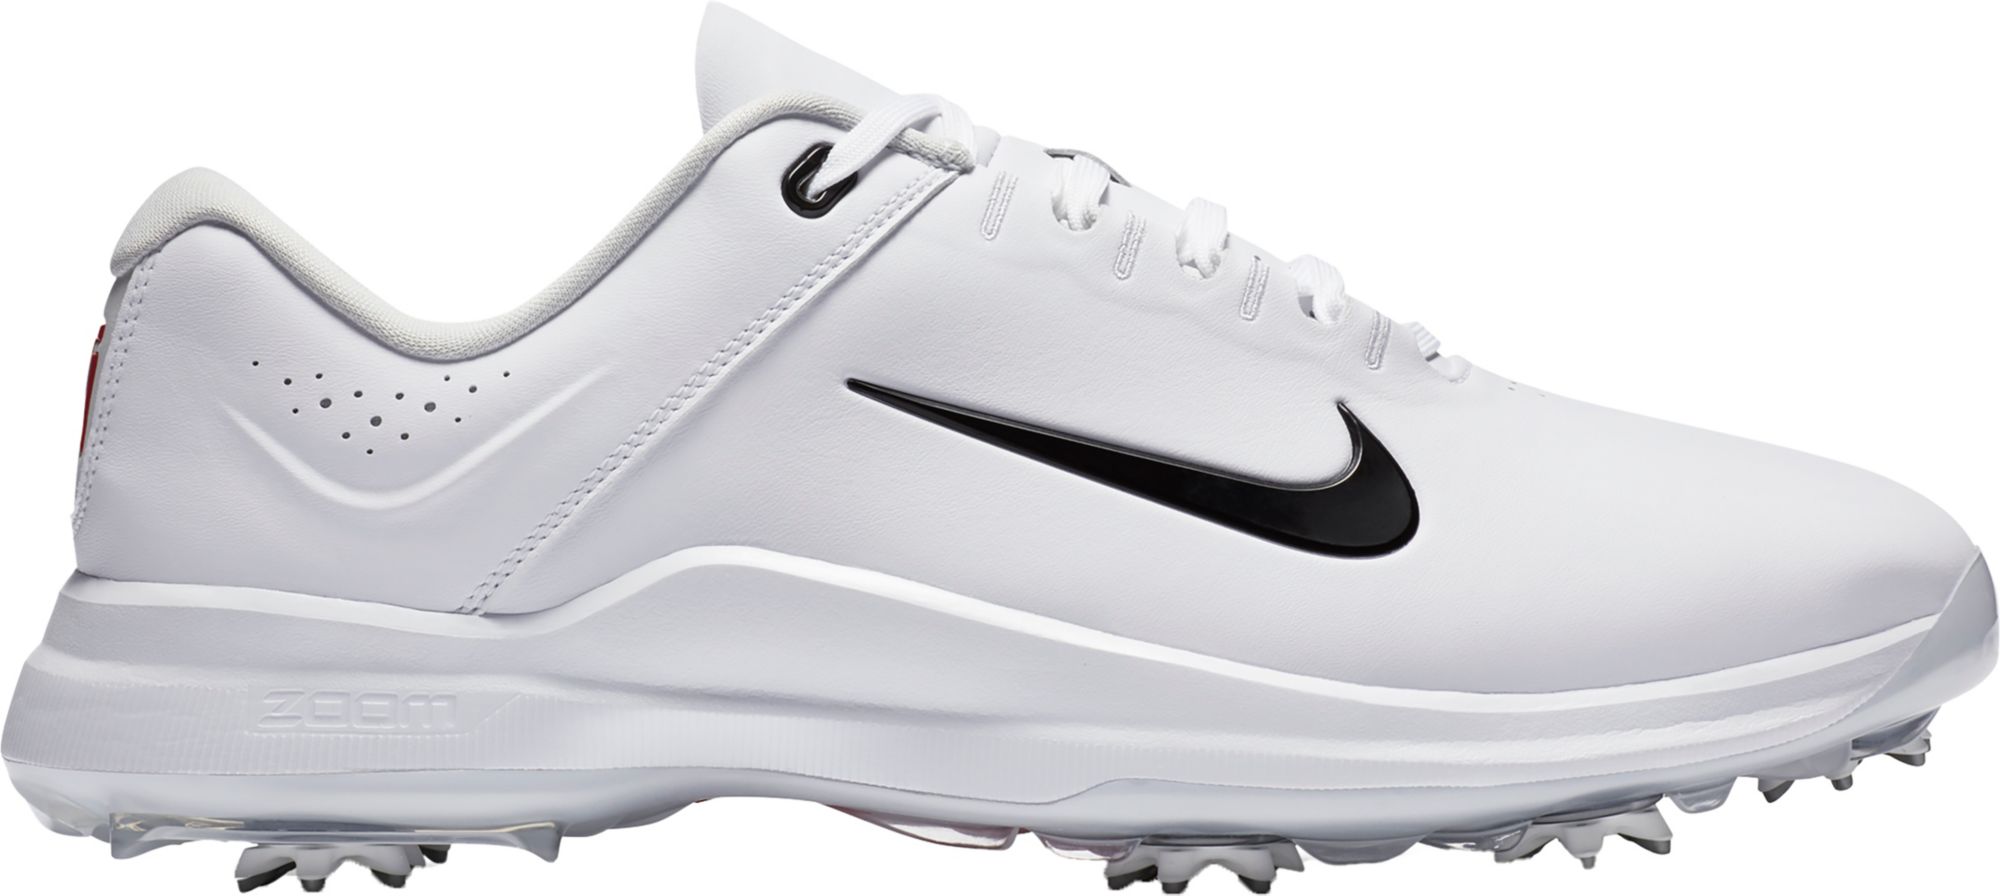 Shop Nike Golf Shoes | Golf Galaxy